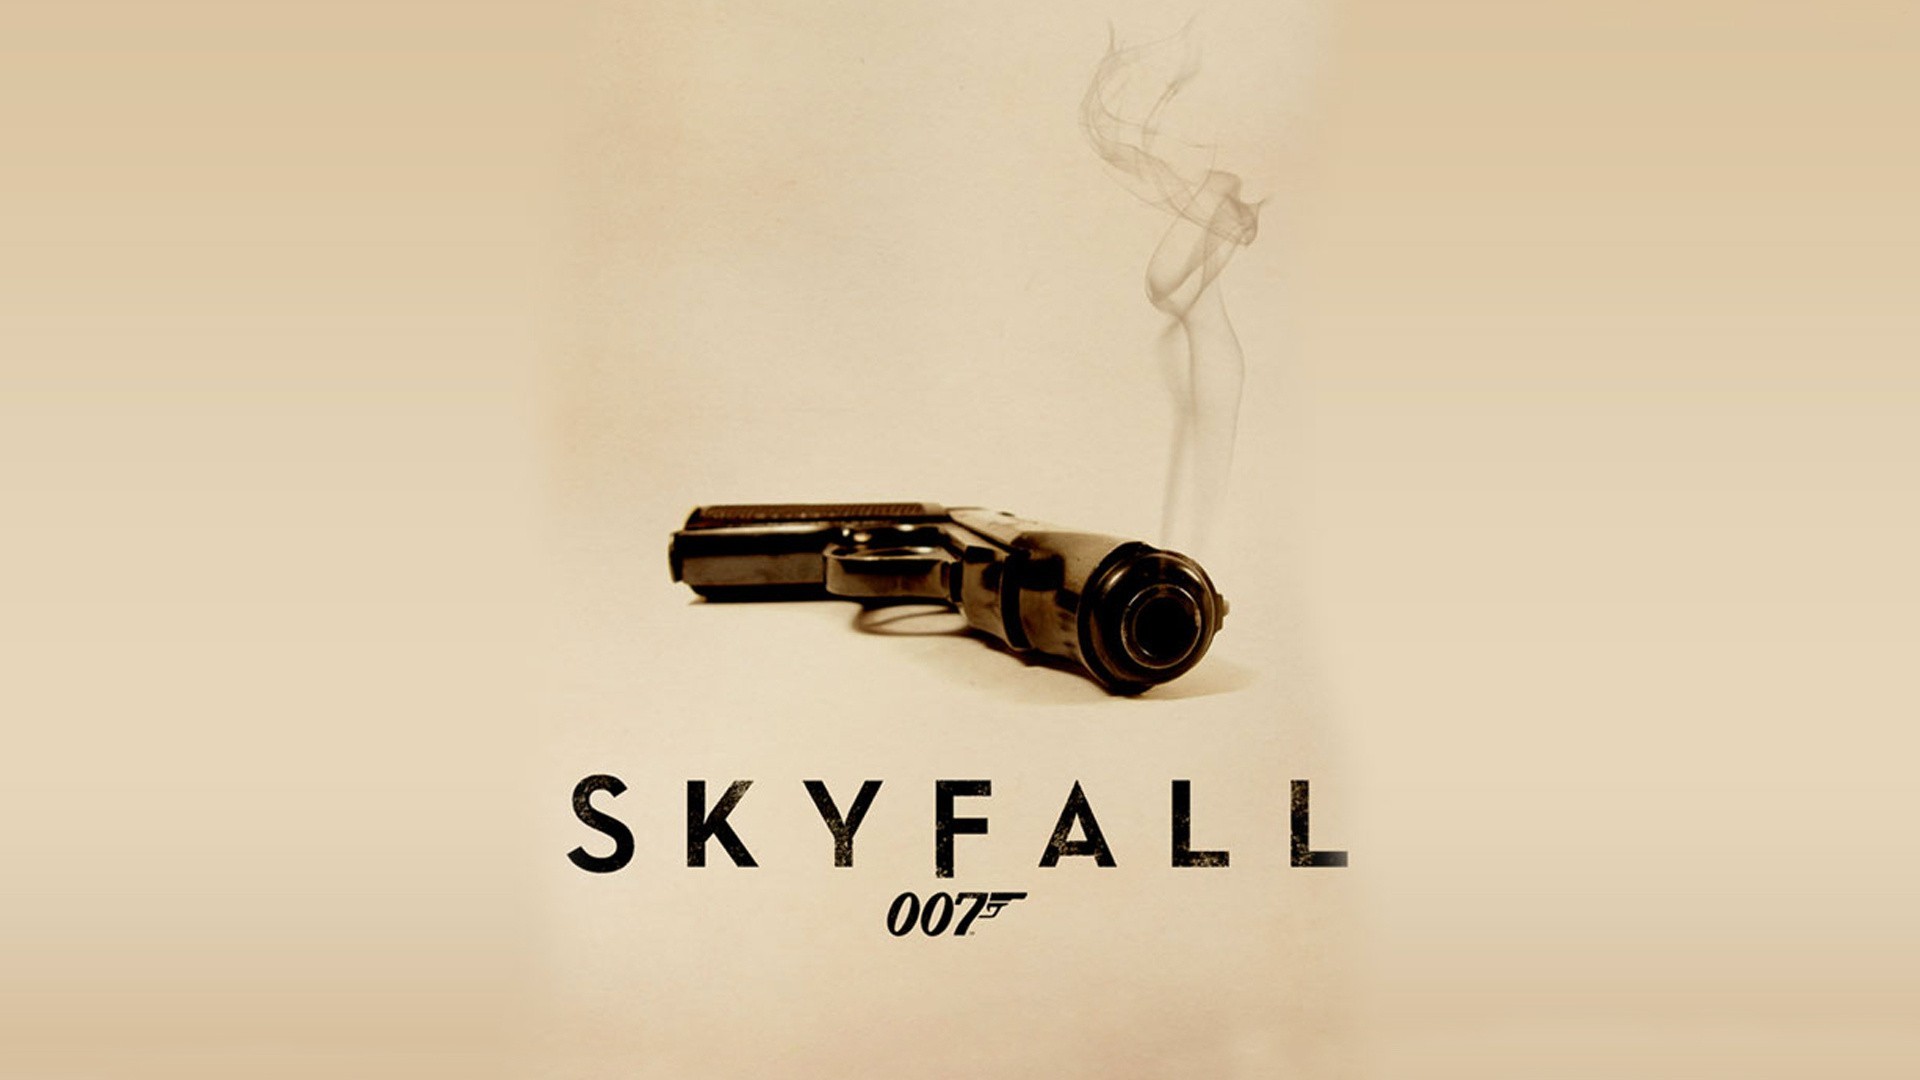 1920x1080 James Bond 007 Movie Skyfall